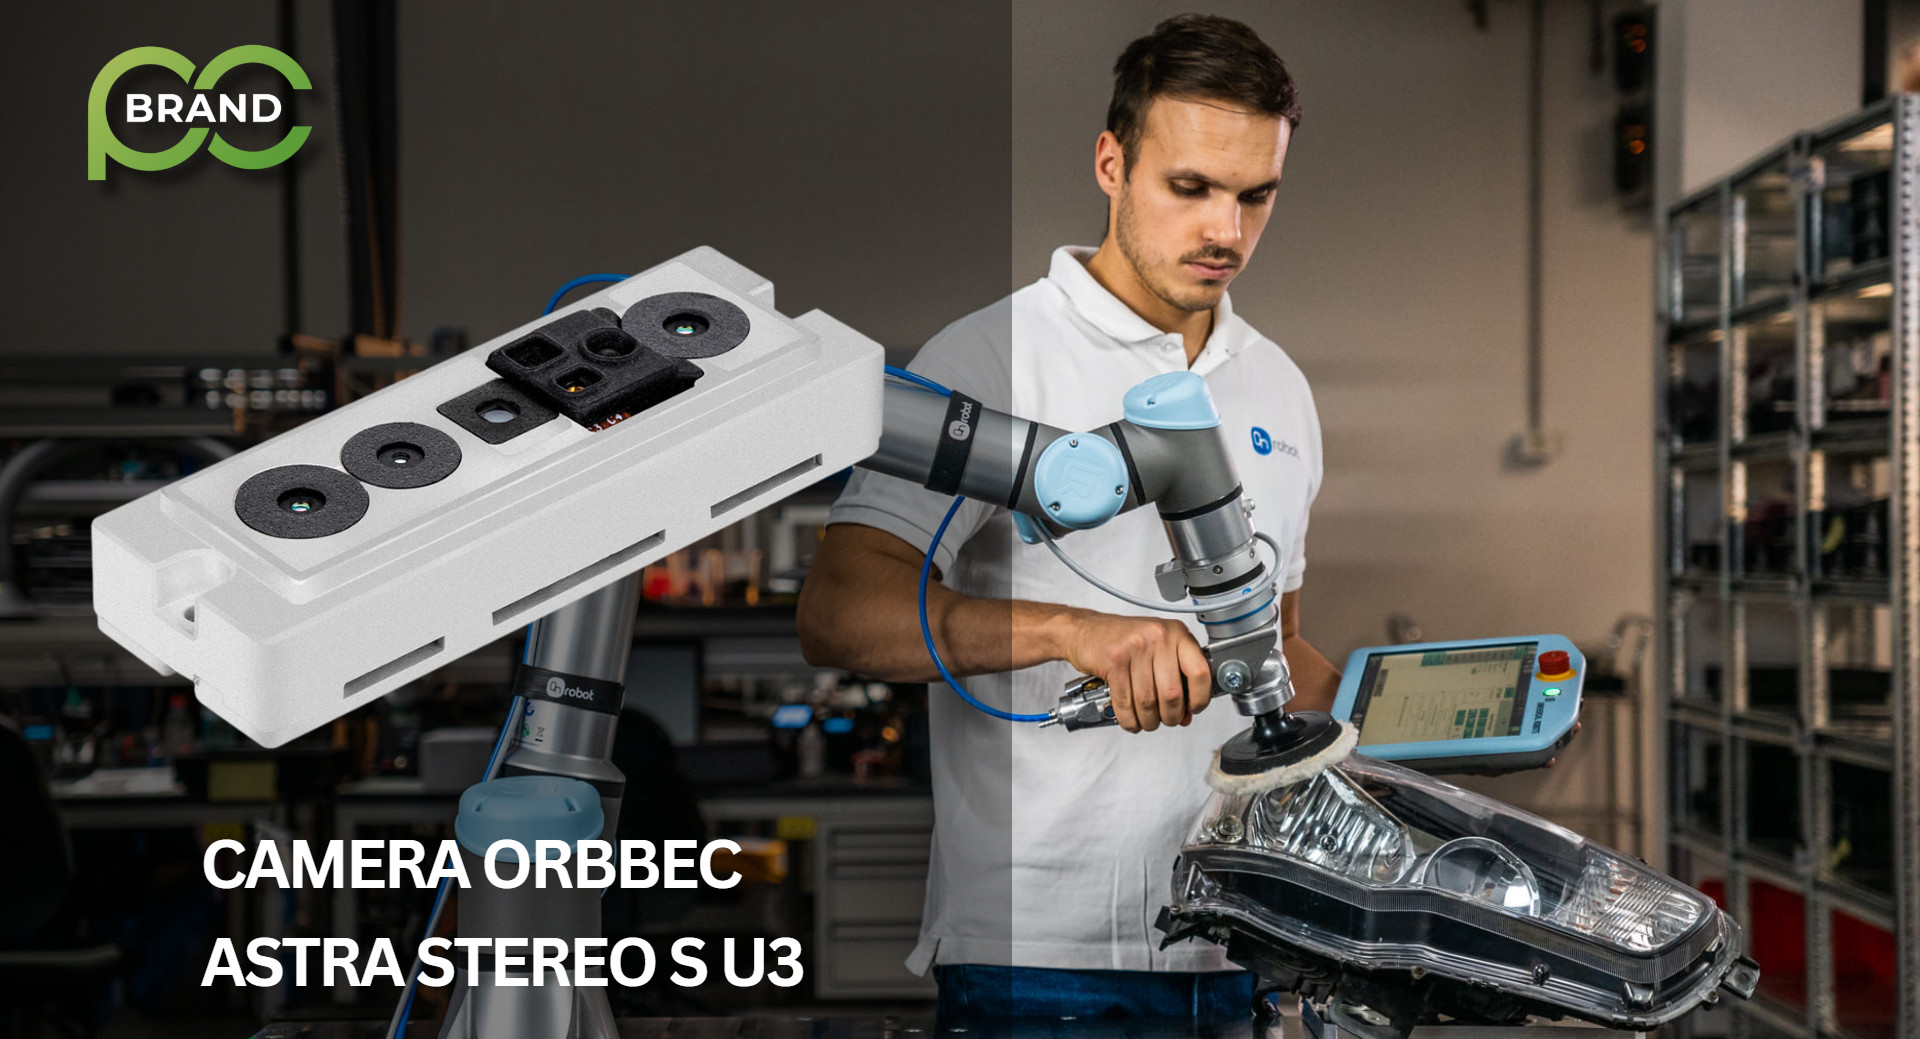 🌟 Khám Phá Sức Mạnh 3D với Astra Stereo S U3 - Camera 3D Orbbec! 🌟